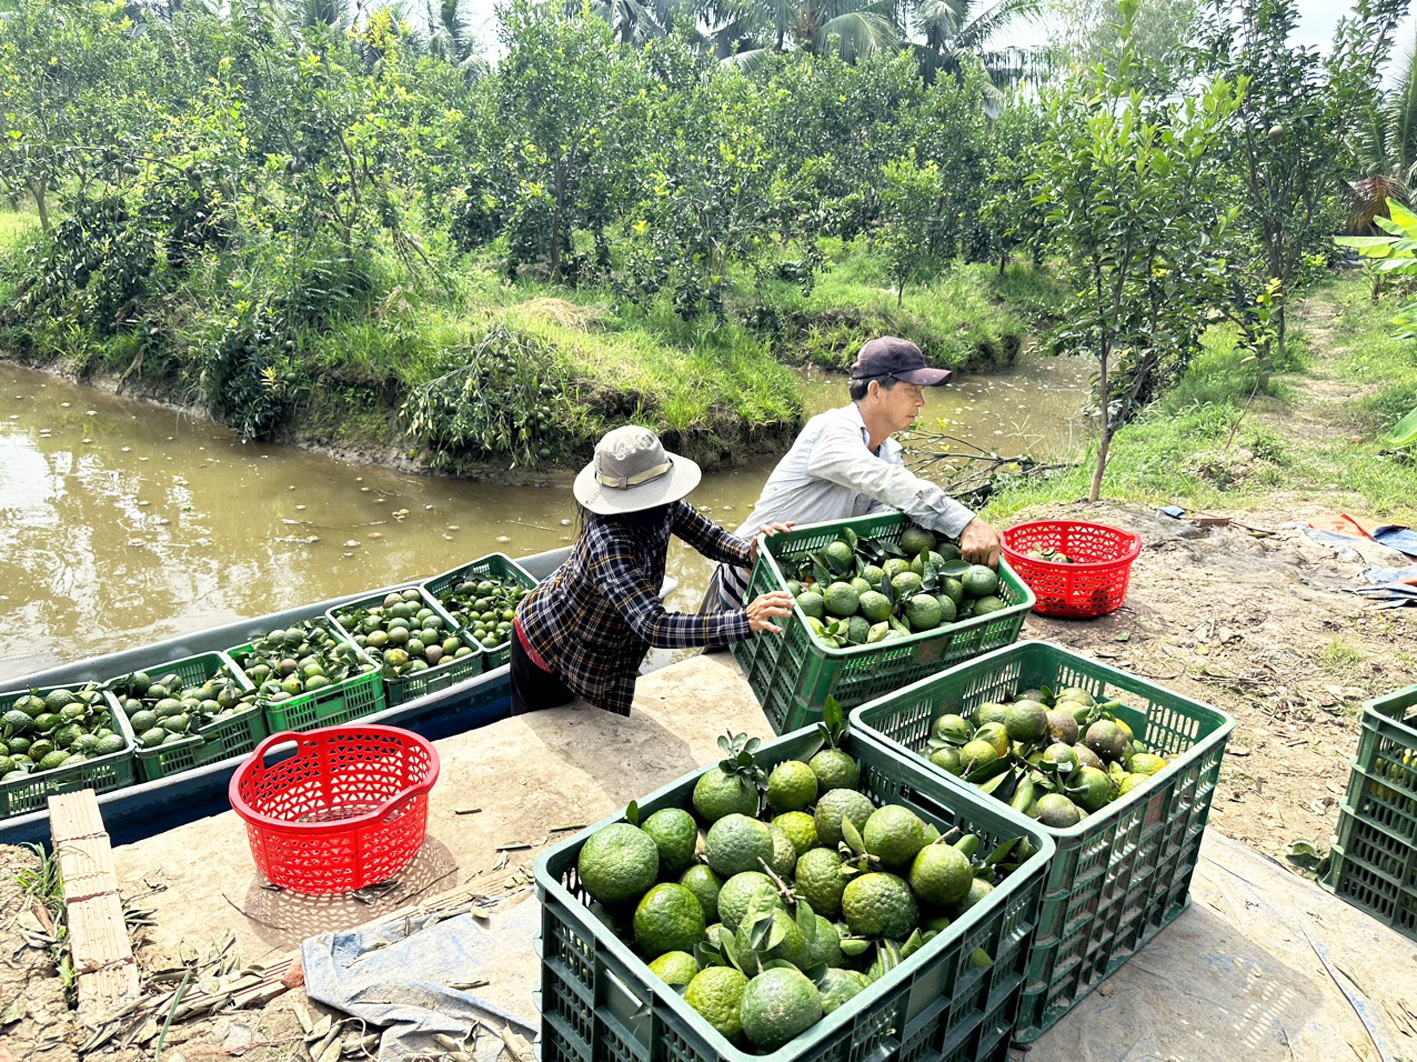 Cam sành ở huyện Trà Ôn, tỉnh Vĩnh Long - loại trái cây dễ vận chuyển, bảo quản, phù hợp với việc tiêu thụ qua kênh thương mại điện tử - ẢNH: THANH LÂM